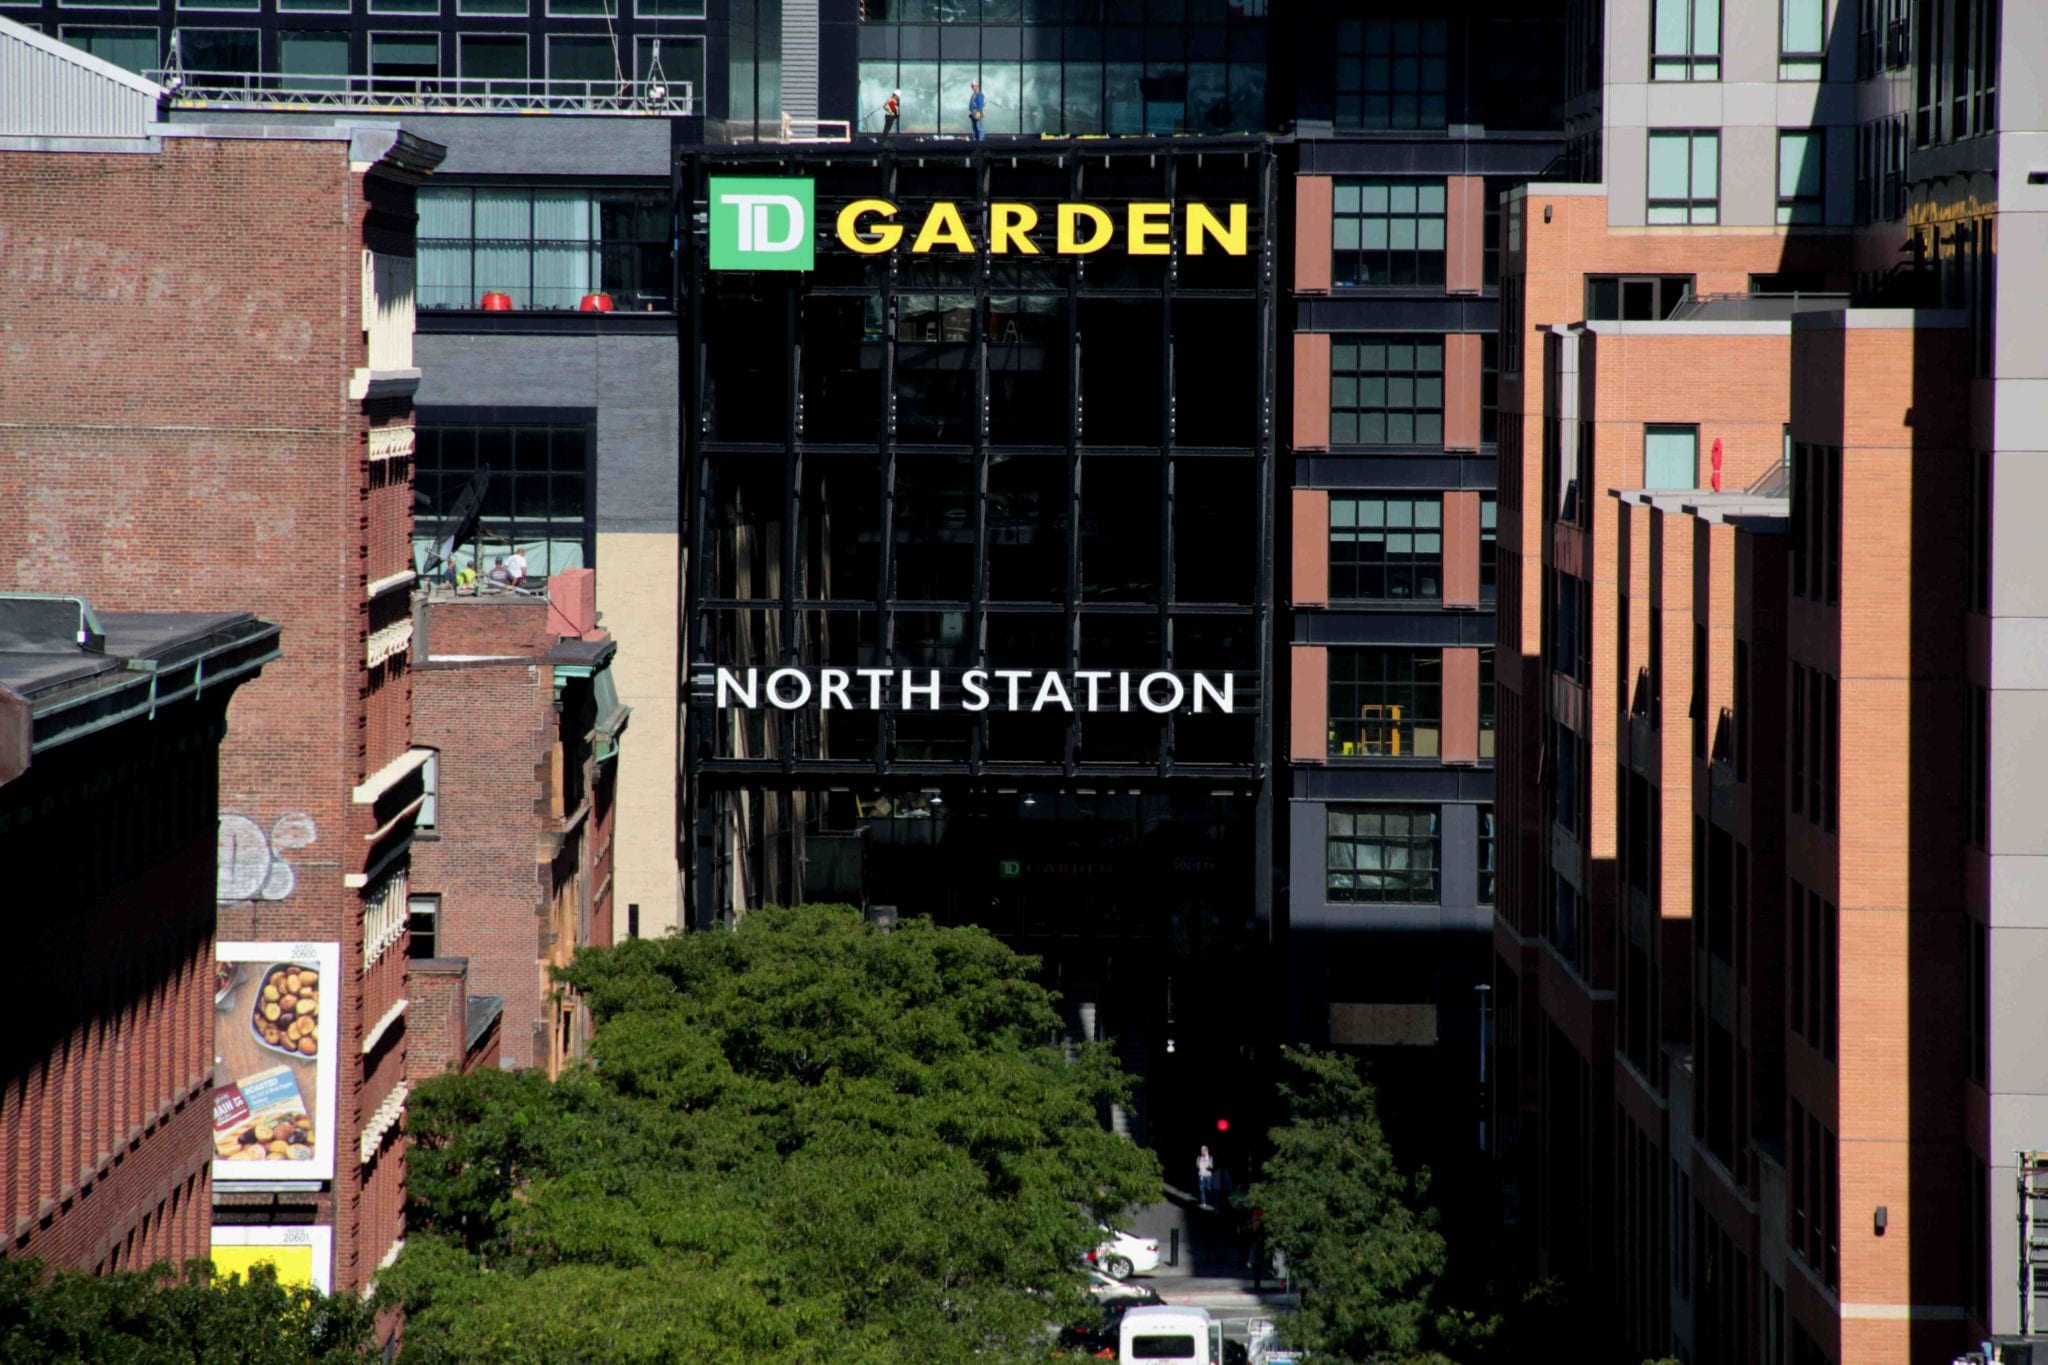 TD Garden, section Floor E, home of Boston Bruins, Boston Celtics